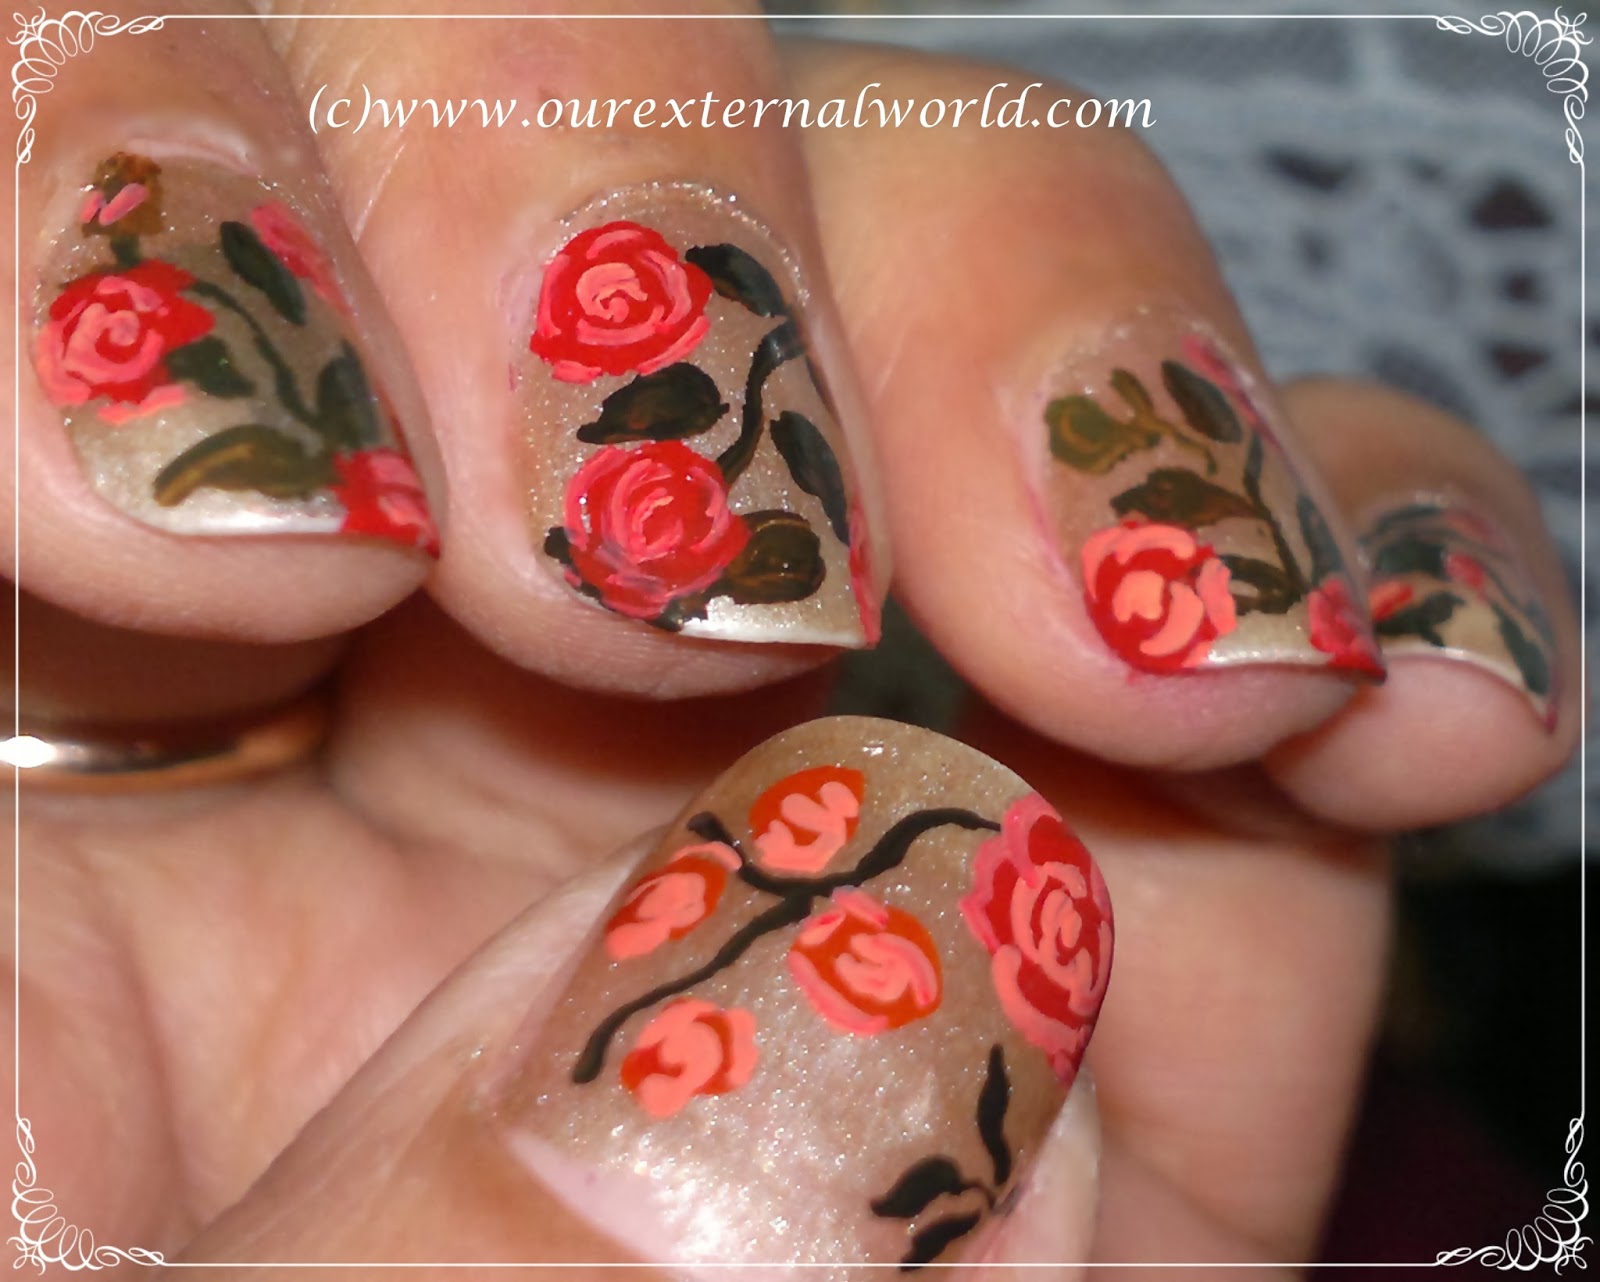 5. Vintage Floral Nail Art Inspiration - wide 5